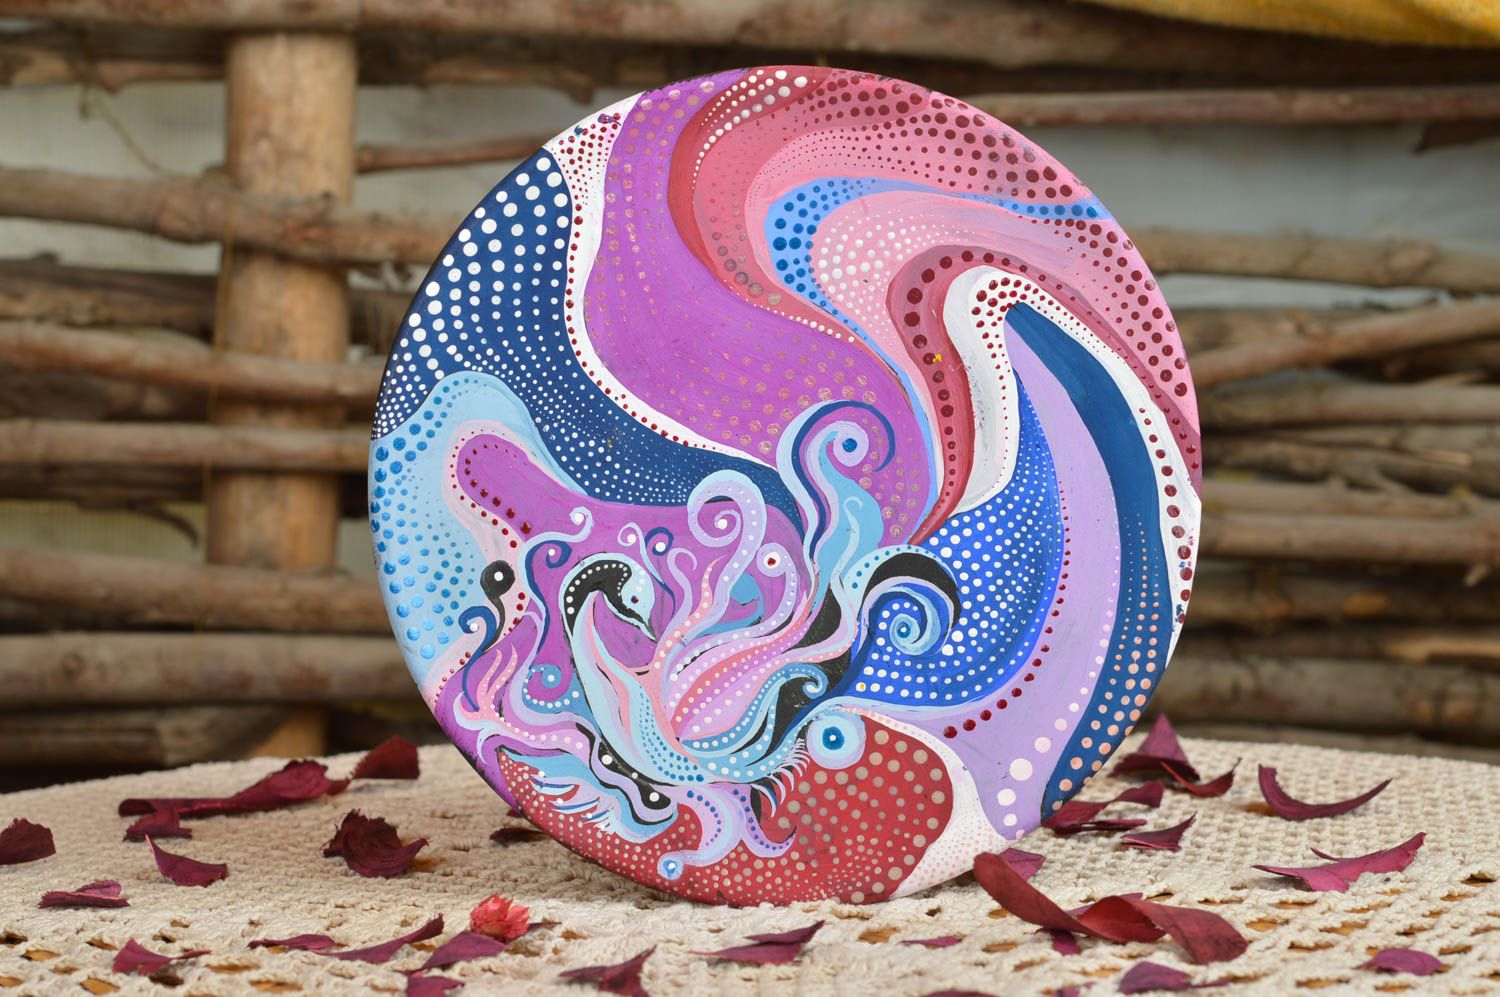 Керамическая тарелка расписанная акриловыми красками декоративная ручной работы фото 1